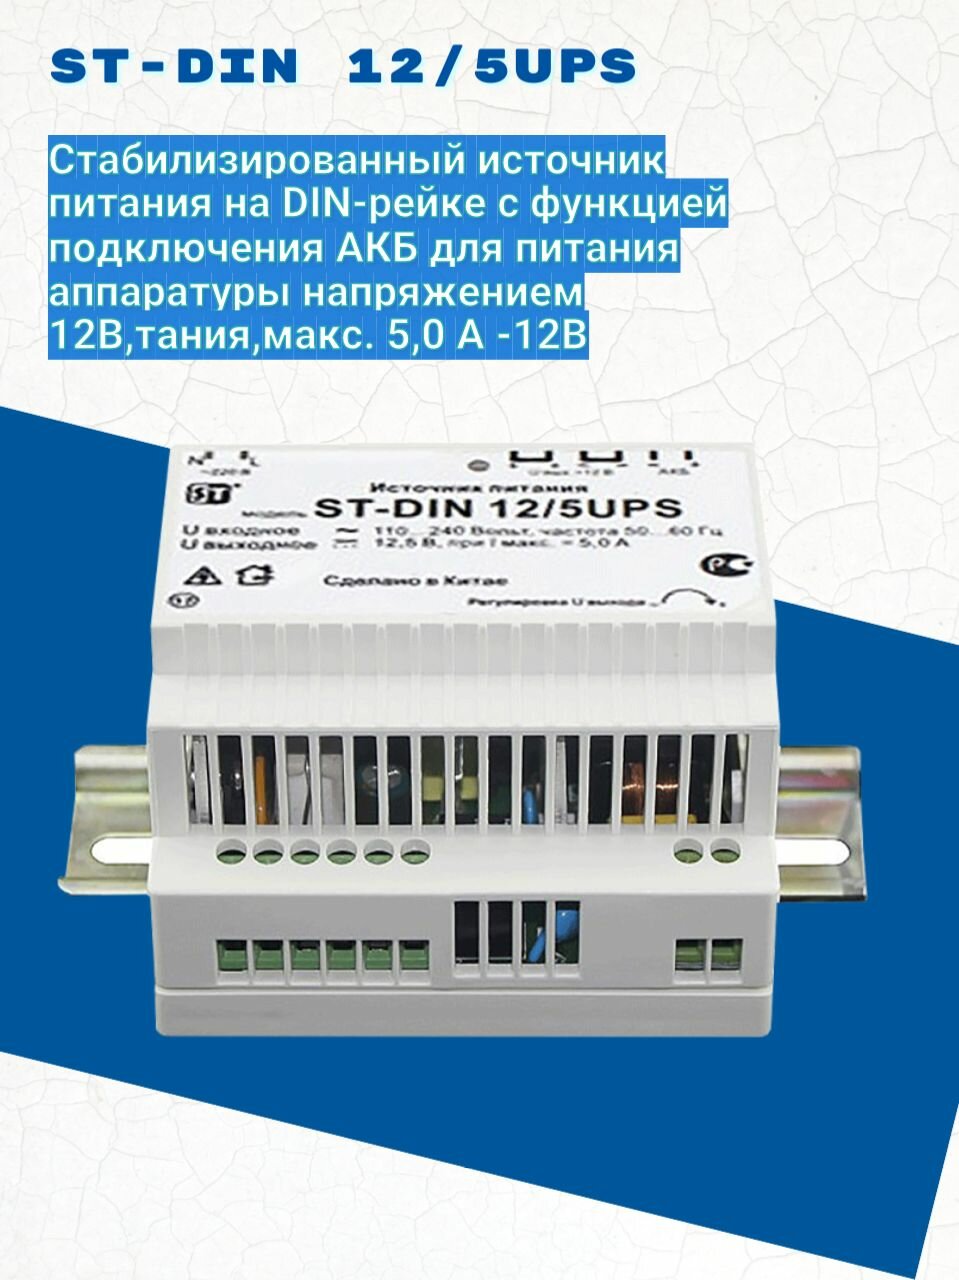 ST-DIN 12/5UPS стабилизированный источник питания на DIN-рейке с функцией подключения АКБ для питания аппаратуры напряжением 12В